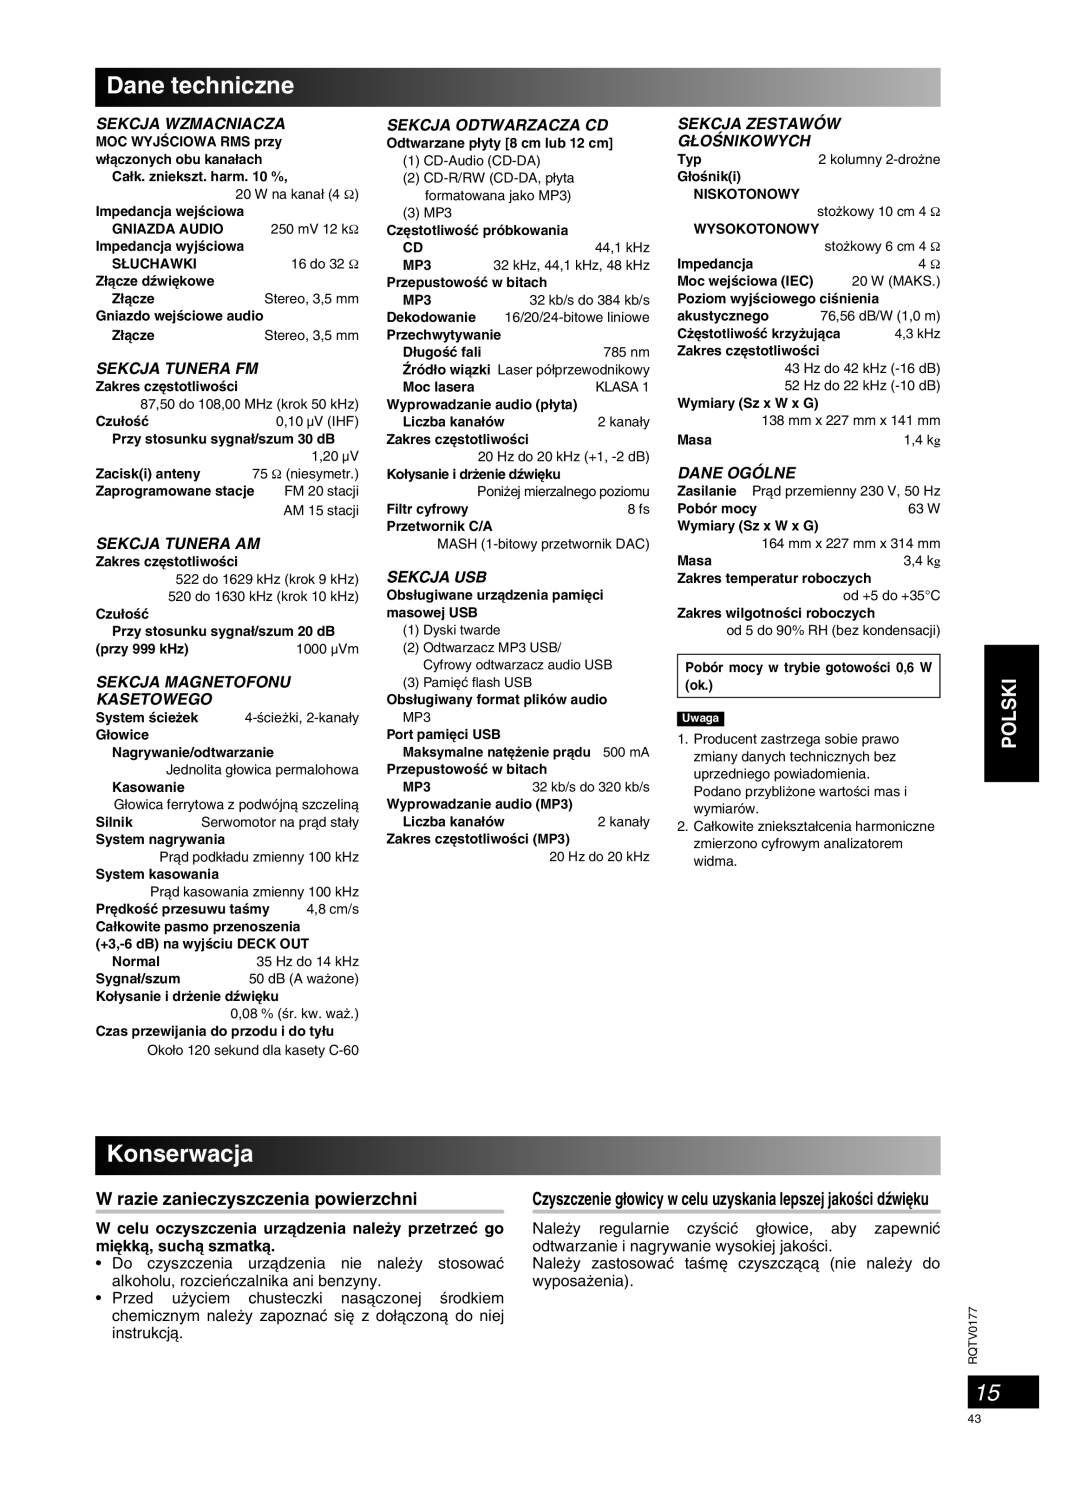 Panasonic SC-PM45 manual Dane techniczne, Konserwacja, Polski, Sekcja Wzmacniacza, Sekcja Tunera Fm, Sekcja Tunera Am 